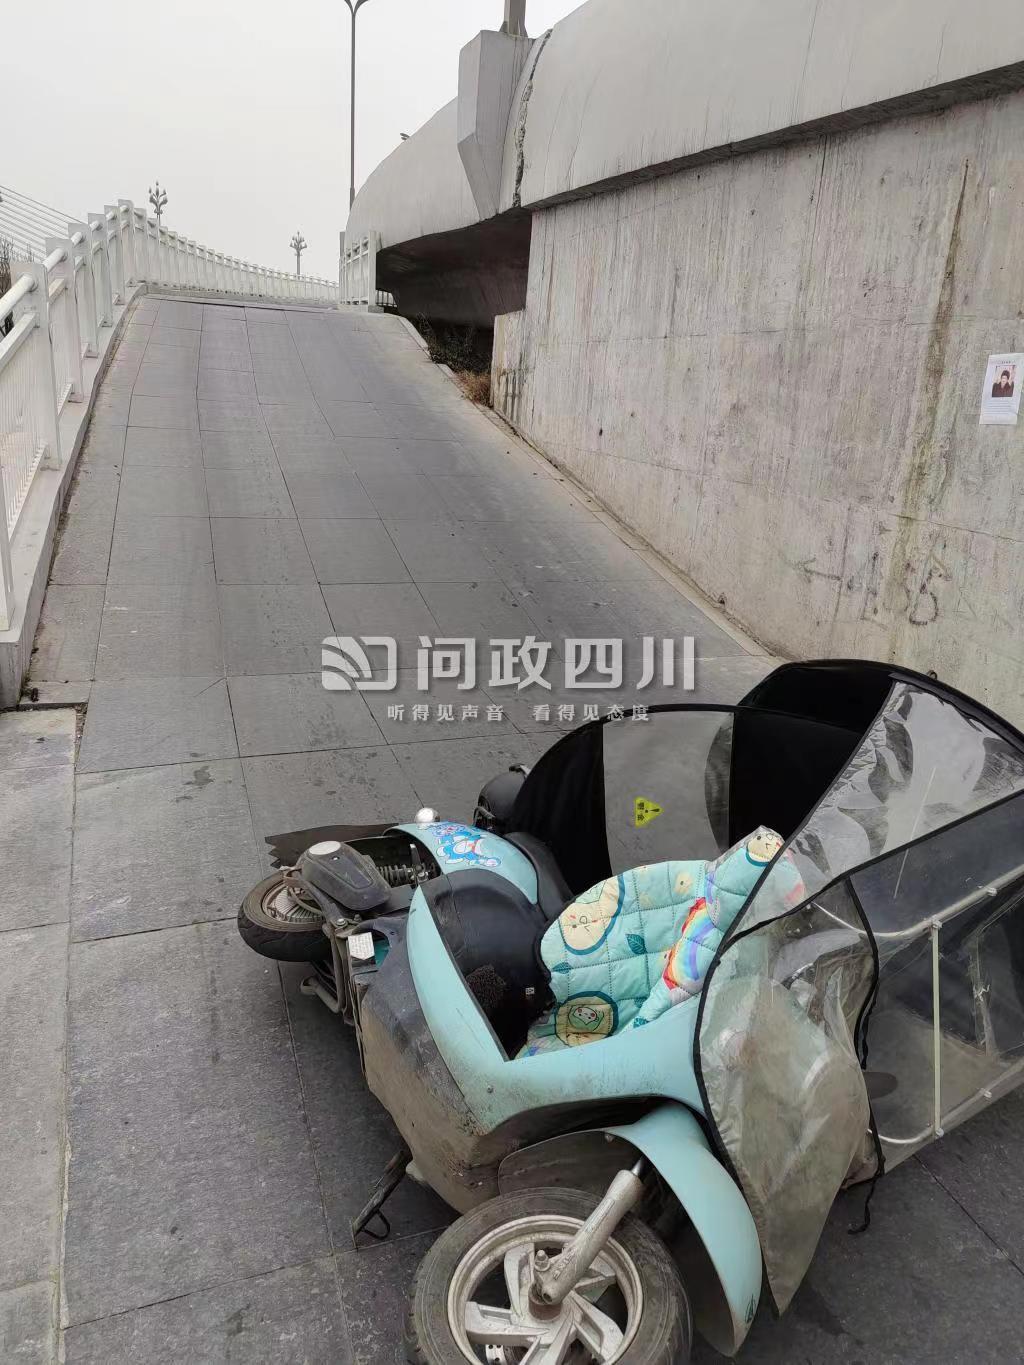 有人骑车在这里摔倒。图片由问政四川网友提供